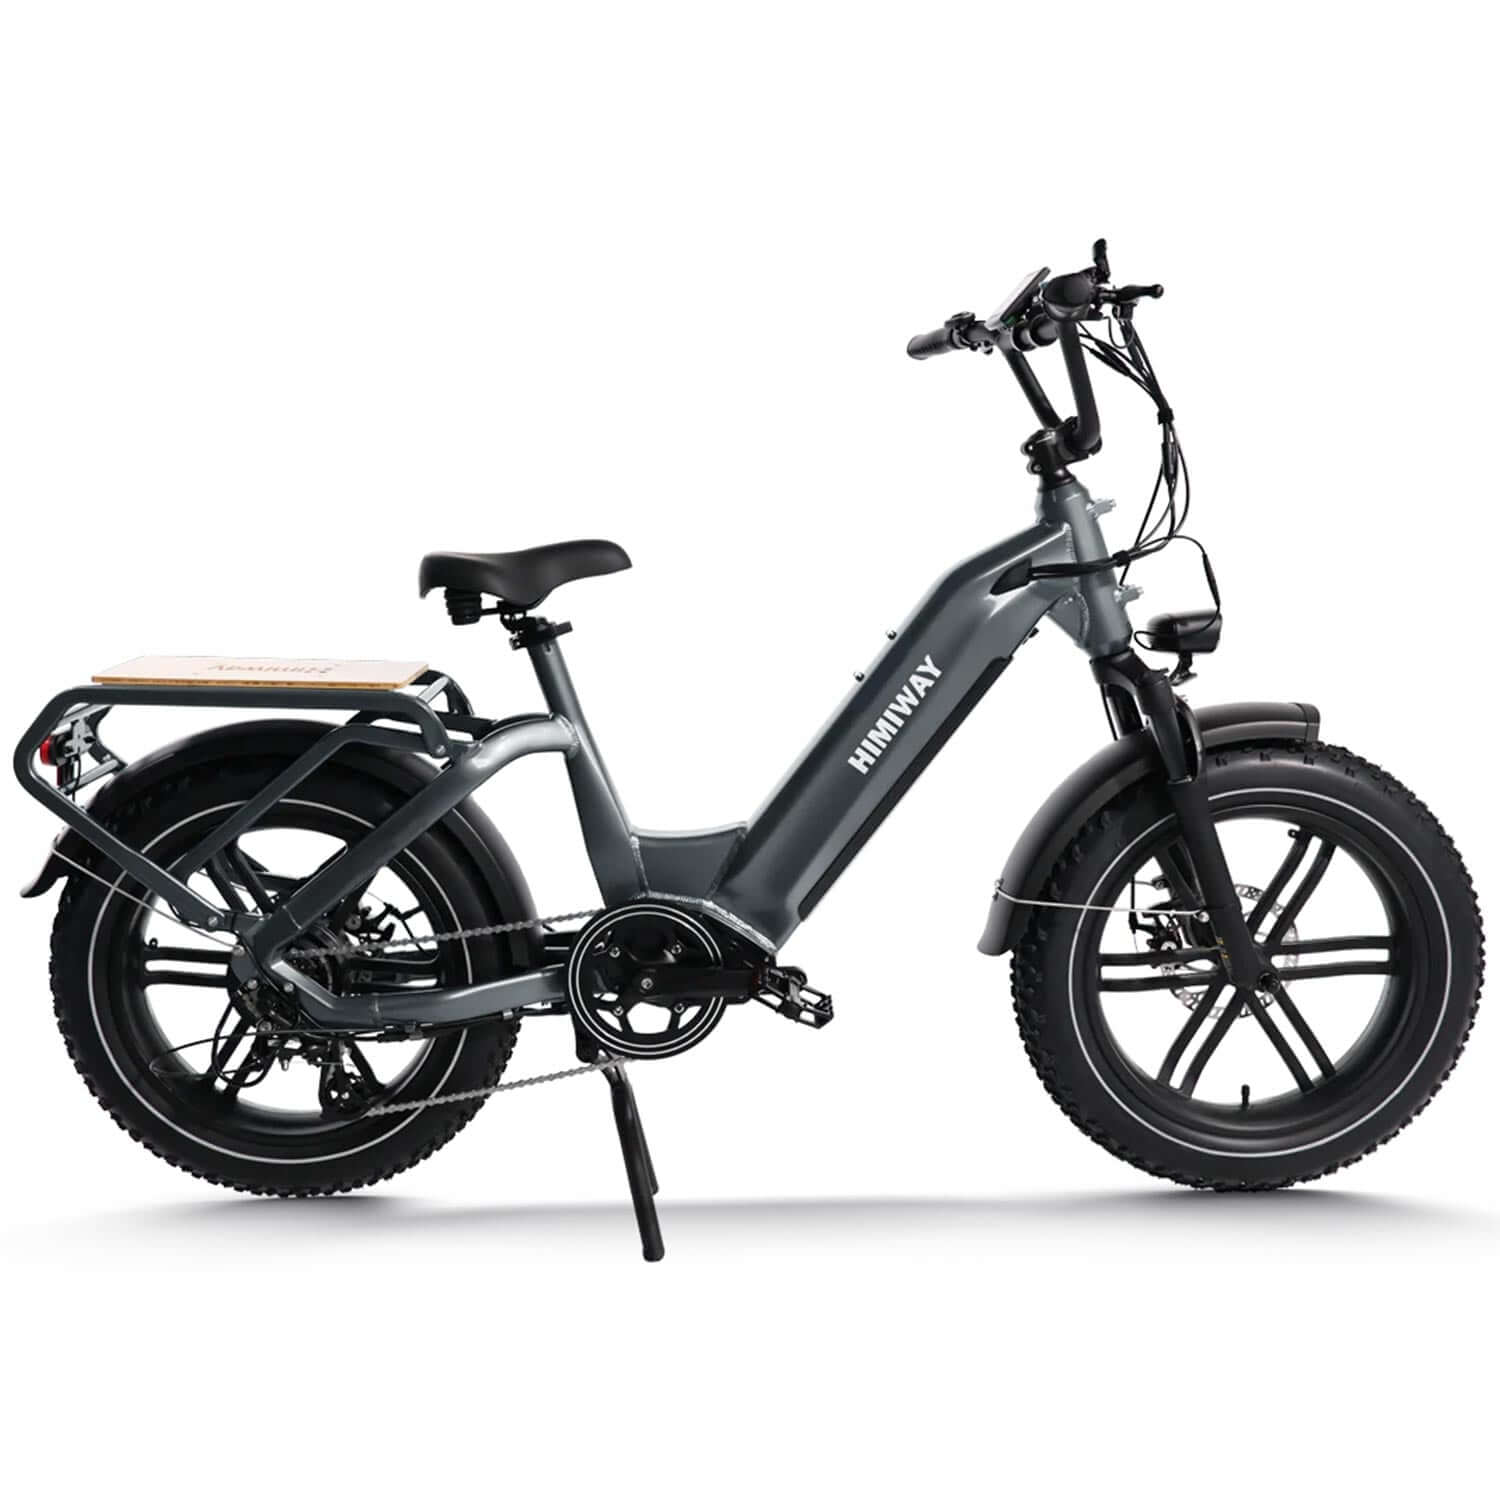 Effiziente Lebensmittelzustellung mit dem Himiway E-Bike Nutze das Himiway Elektro Bike für mühelose Lebensmittel- und Paketlieferungen. Hohe Reichweite und Tragfähigkeit. SXT-Scooters